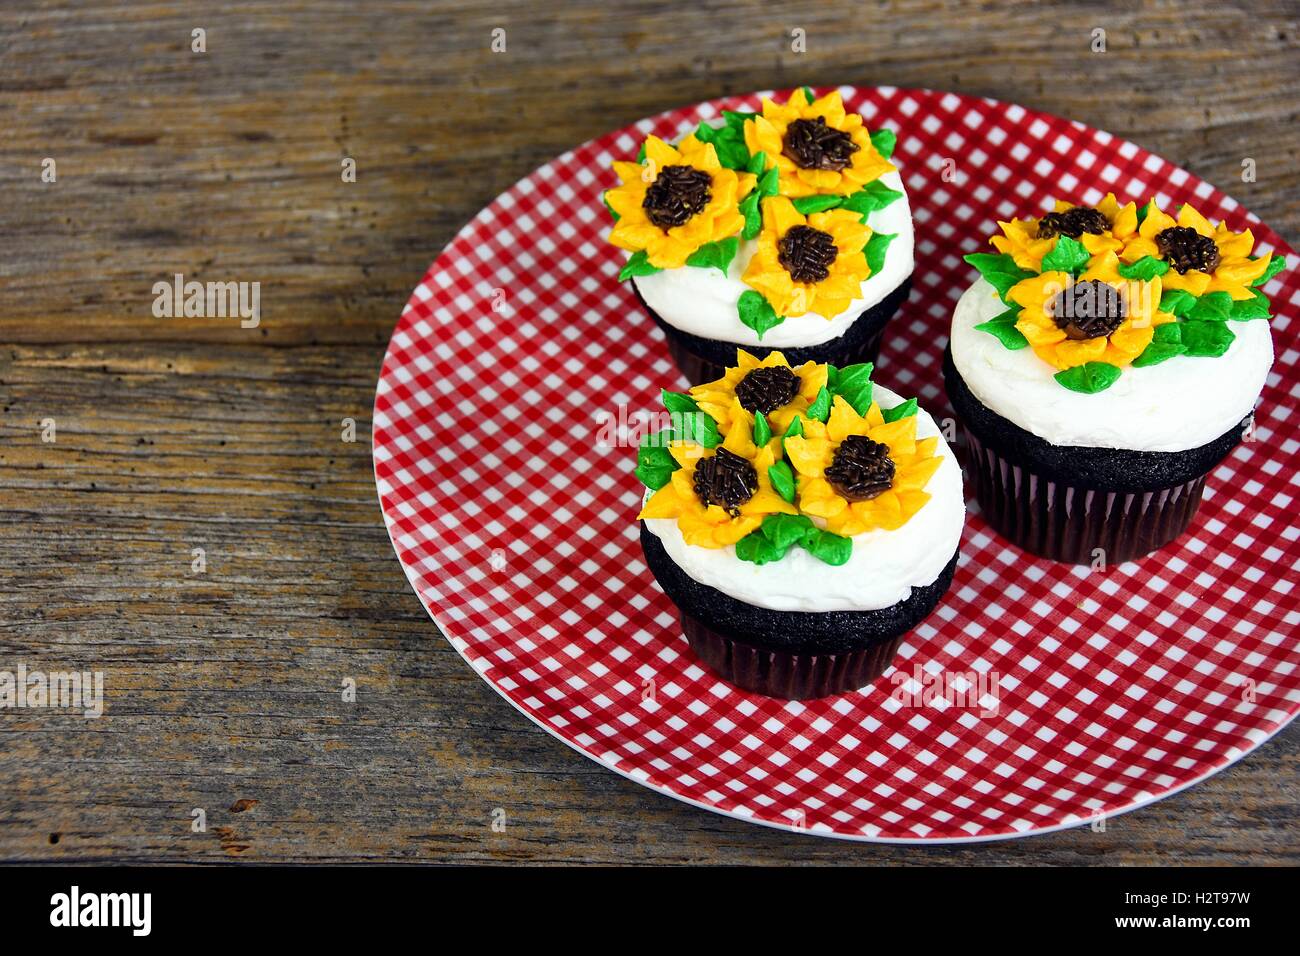 Sonnenblume Zuckerguss Design auf Schokoladentörtchen auf rot-weiß karierten Teller Stockfoto